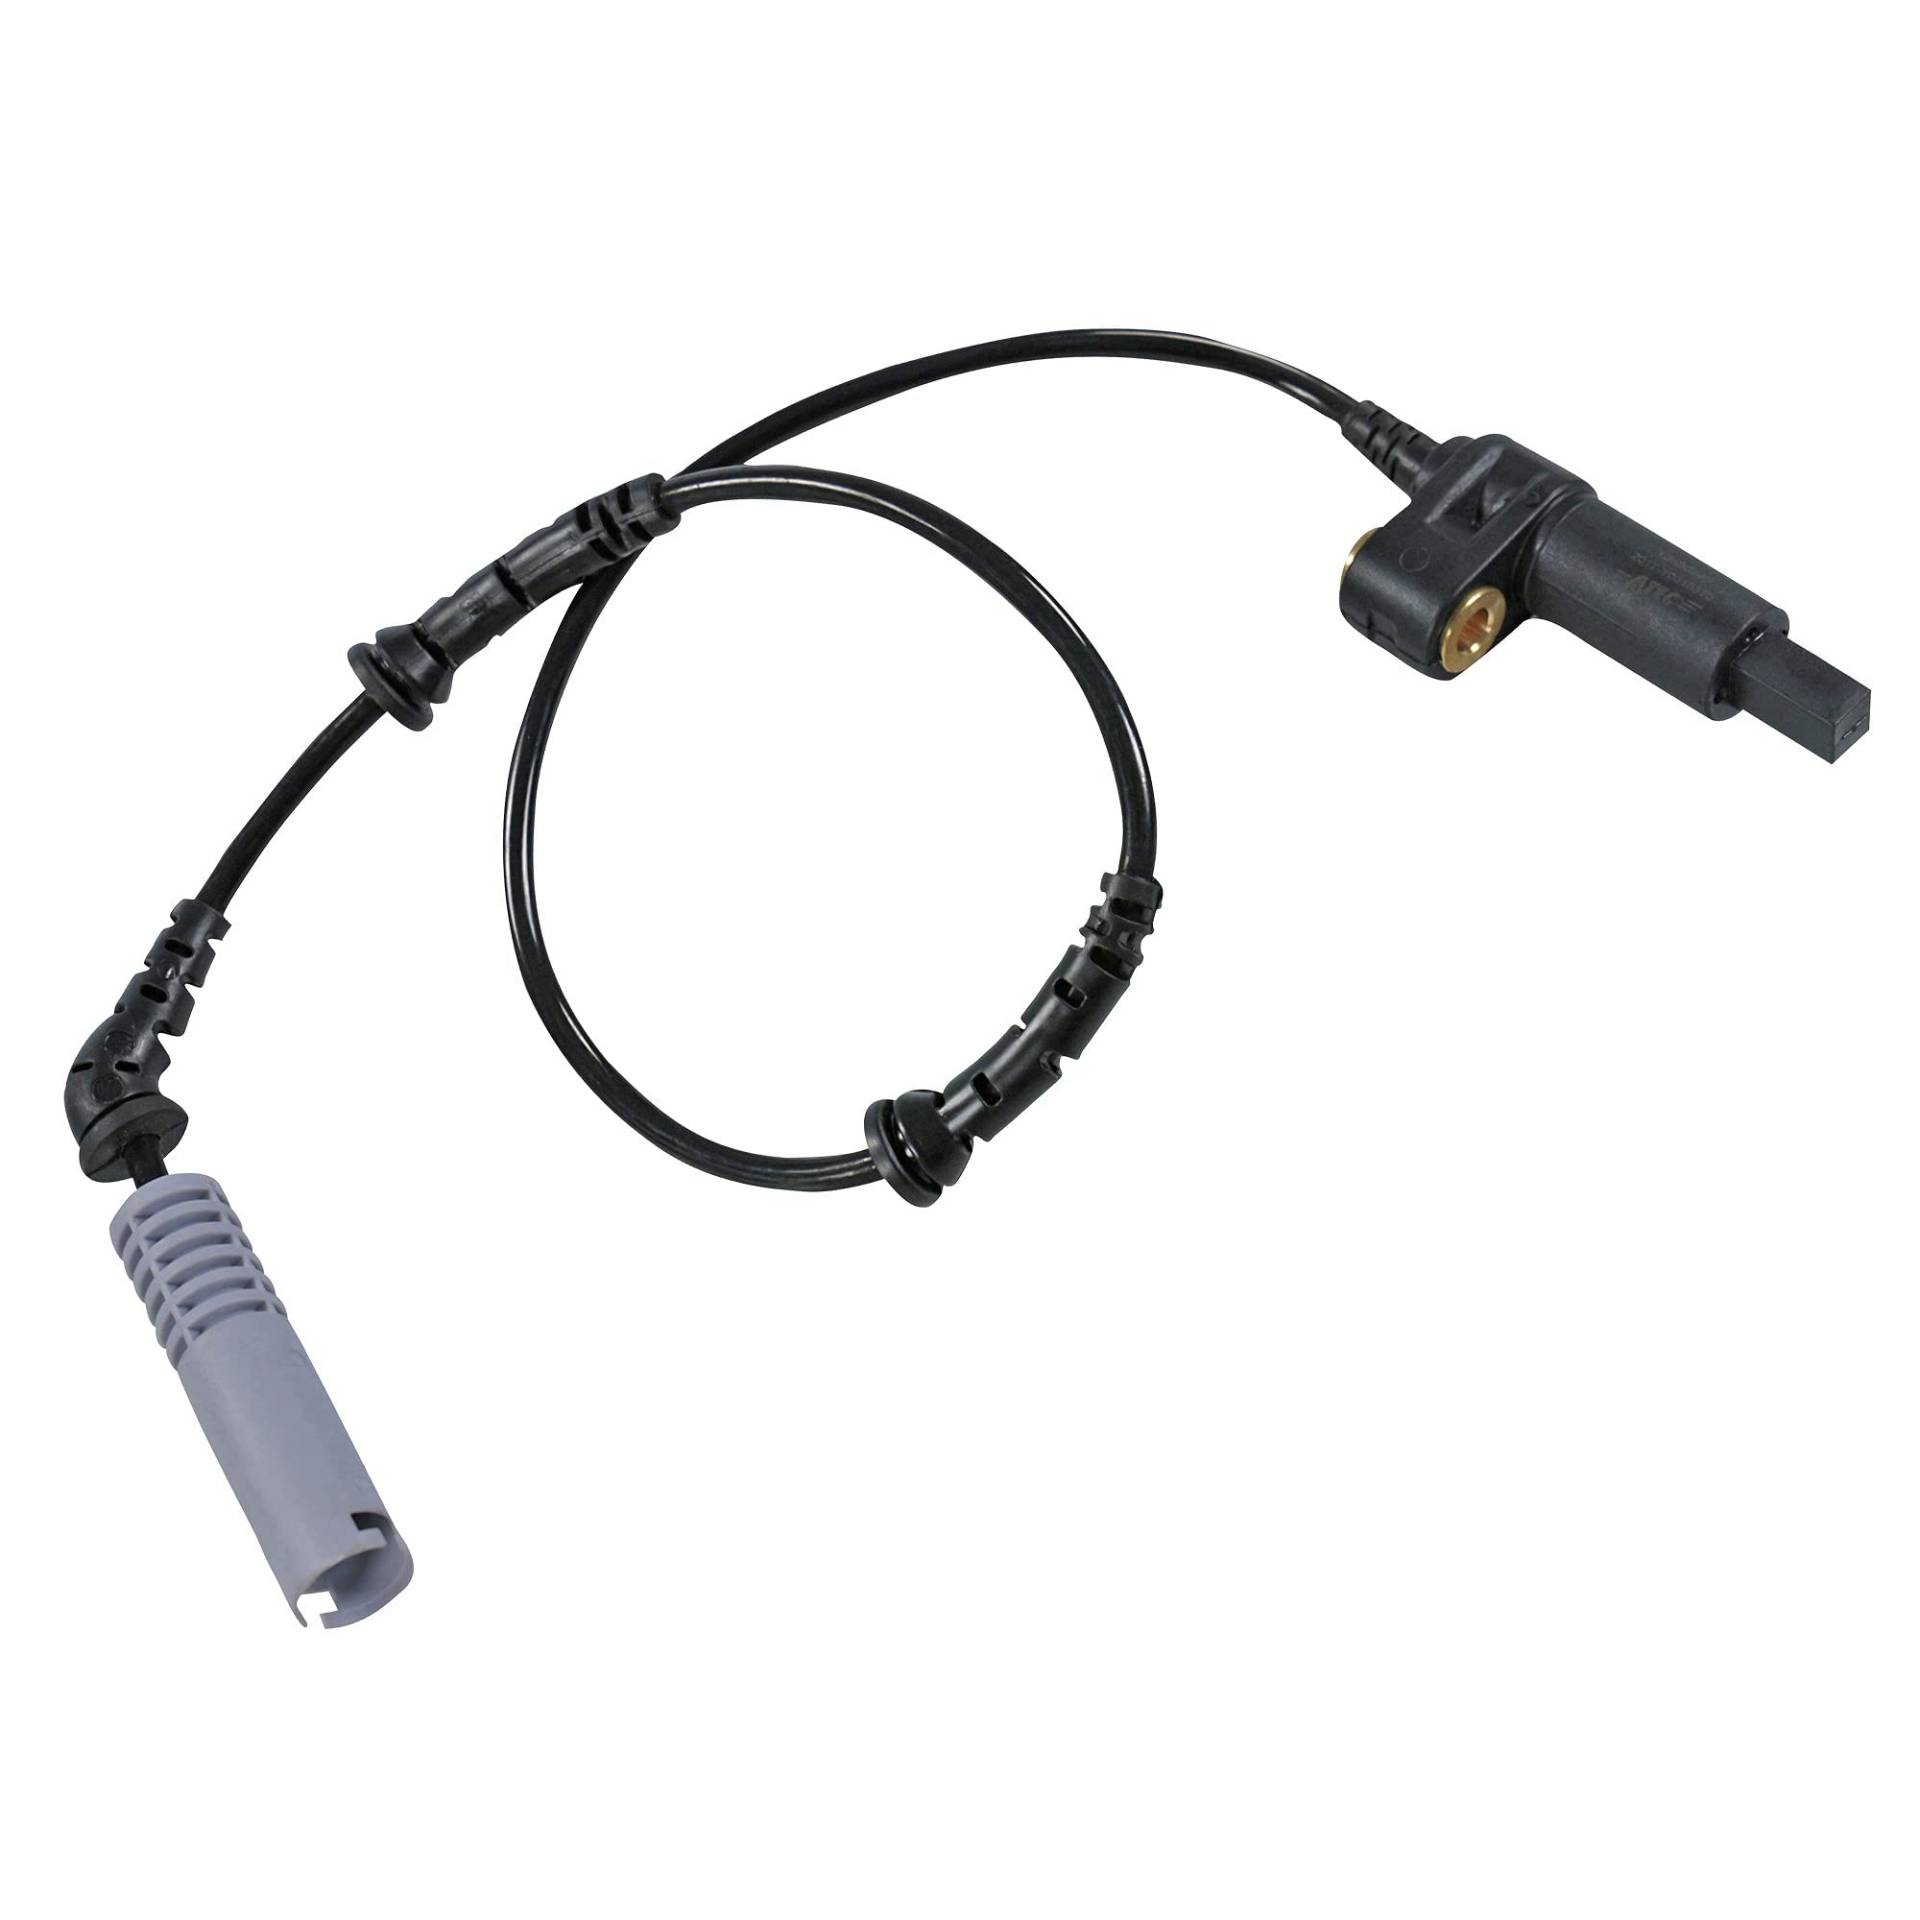 1x ABS-Sensor für Vorderachse beidseitig passend Länge: 650 mm, nur passend bei Fahrzeuge ohne DSC, von ATEC Germany